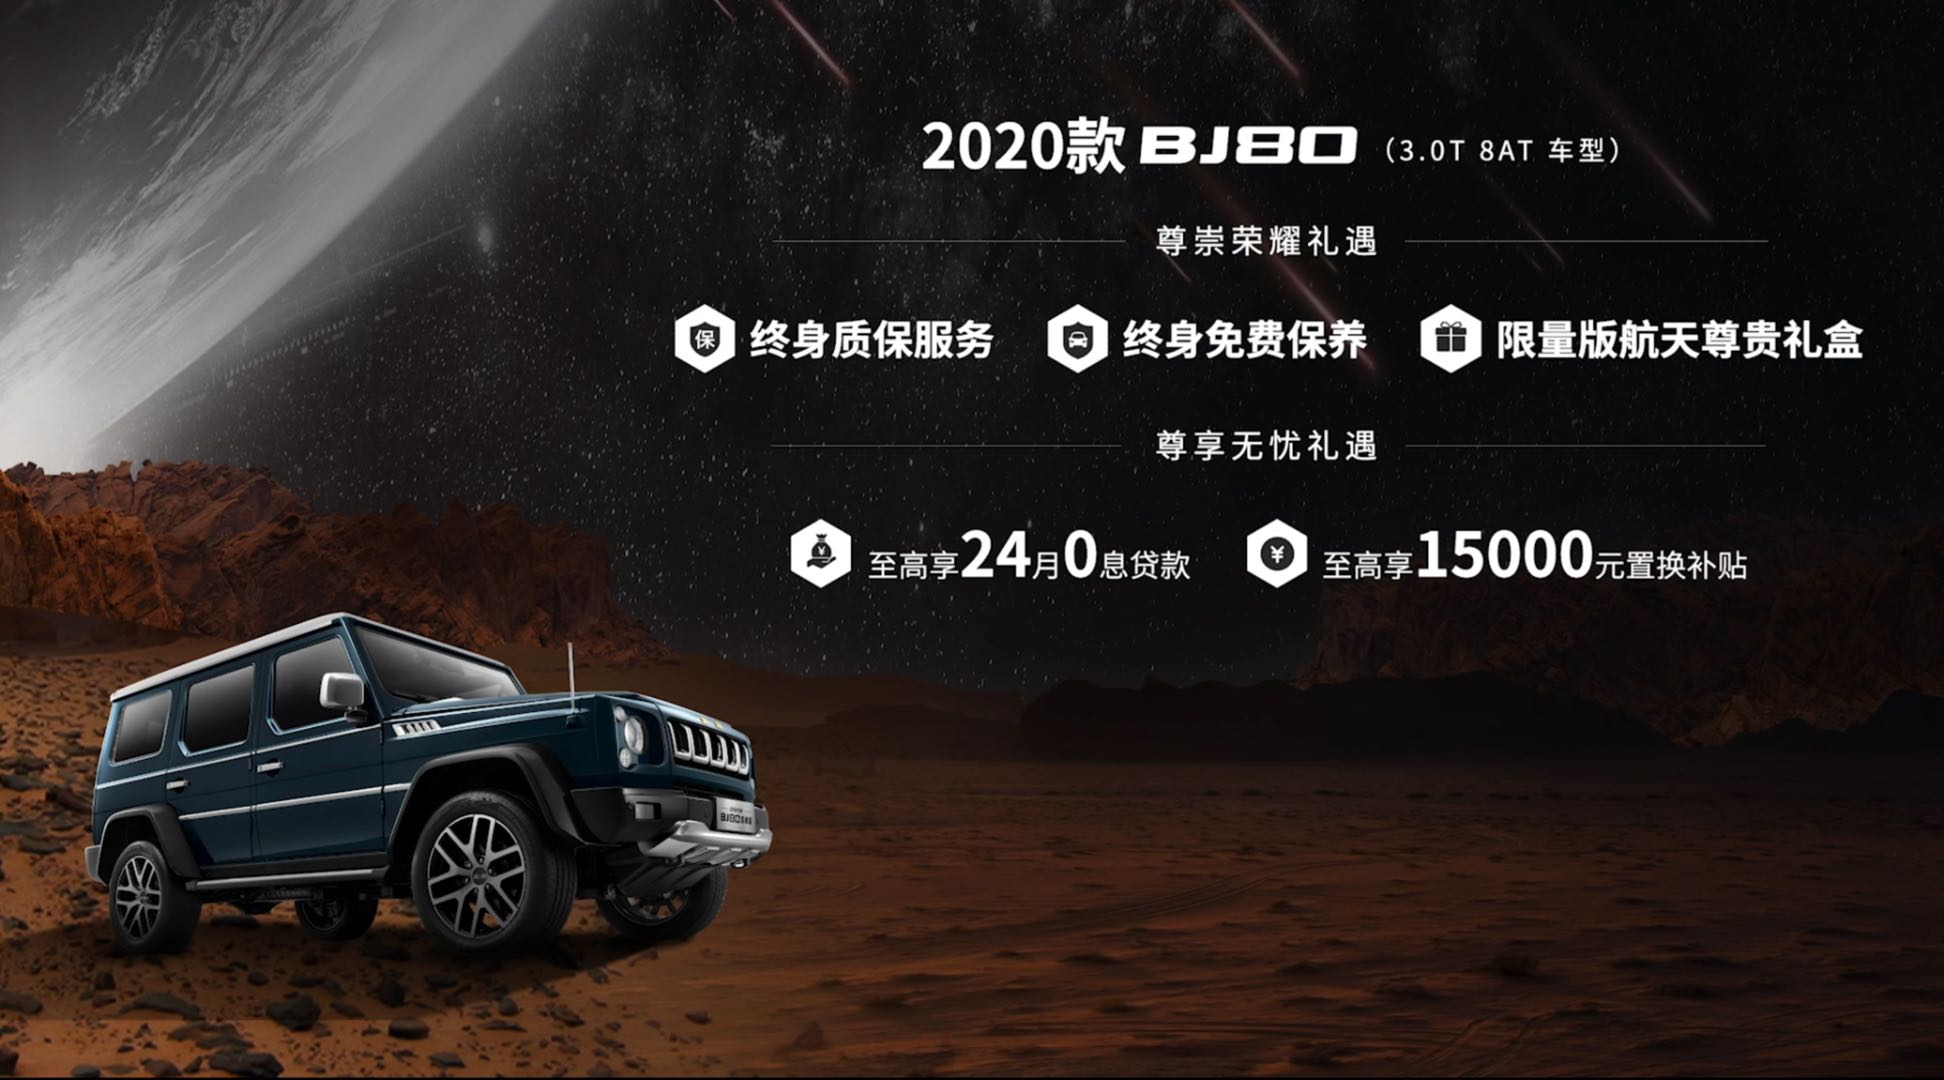 填补中国自主大排量越野车空白 北京越野2020款BJ80正式上市